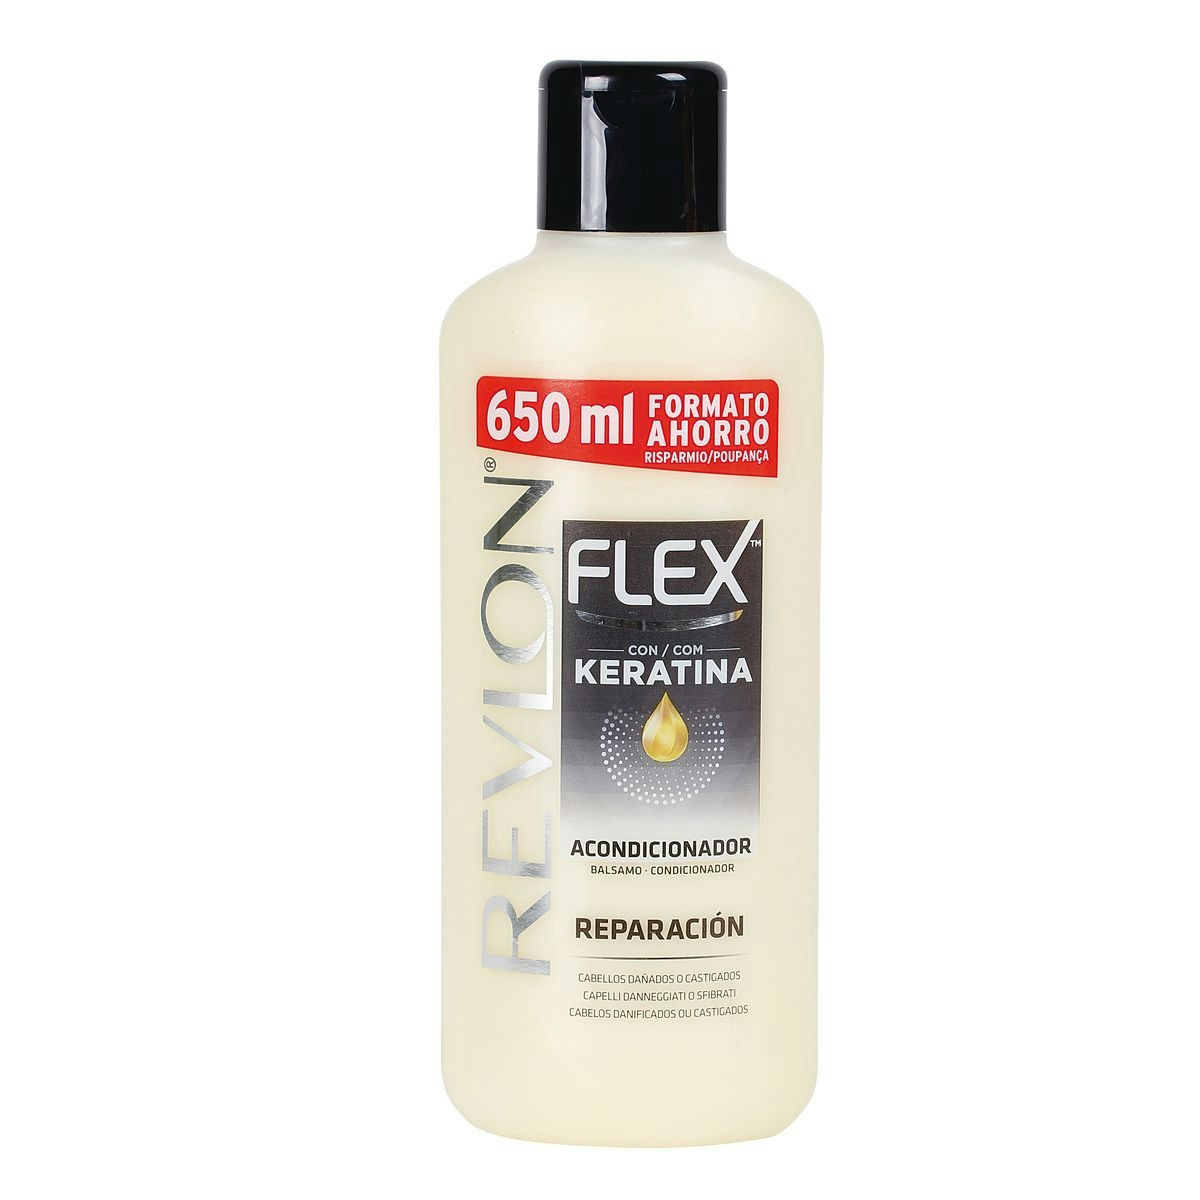 Crema suavizante FLEX con keratina cabello seco o dañado 650 ml